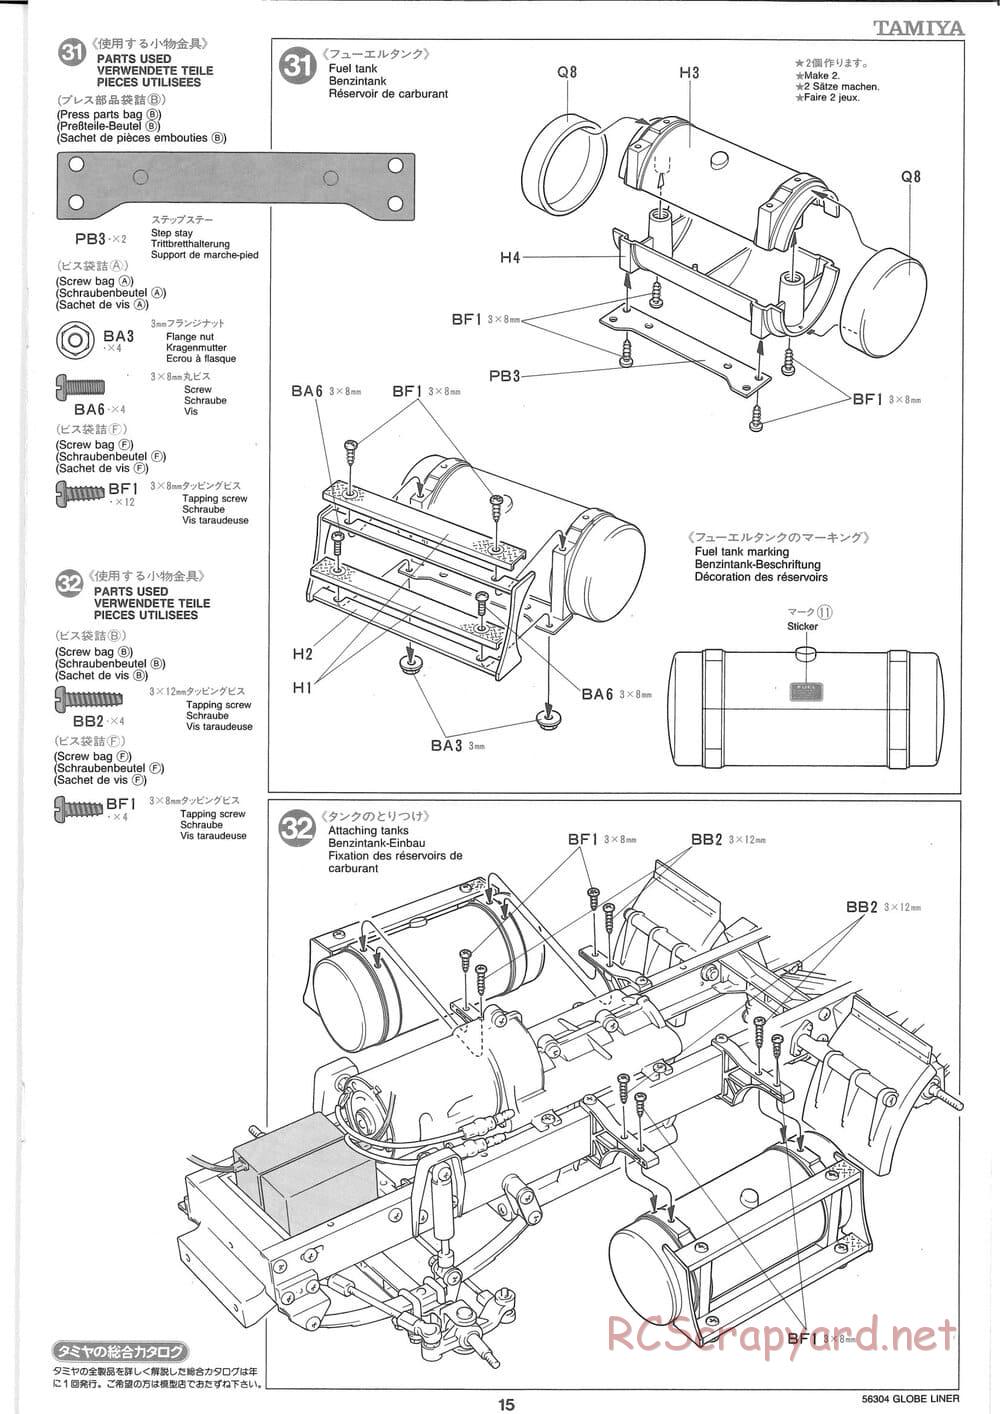 Tamiya - Globe Liner - Manual - Page 15